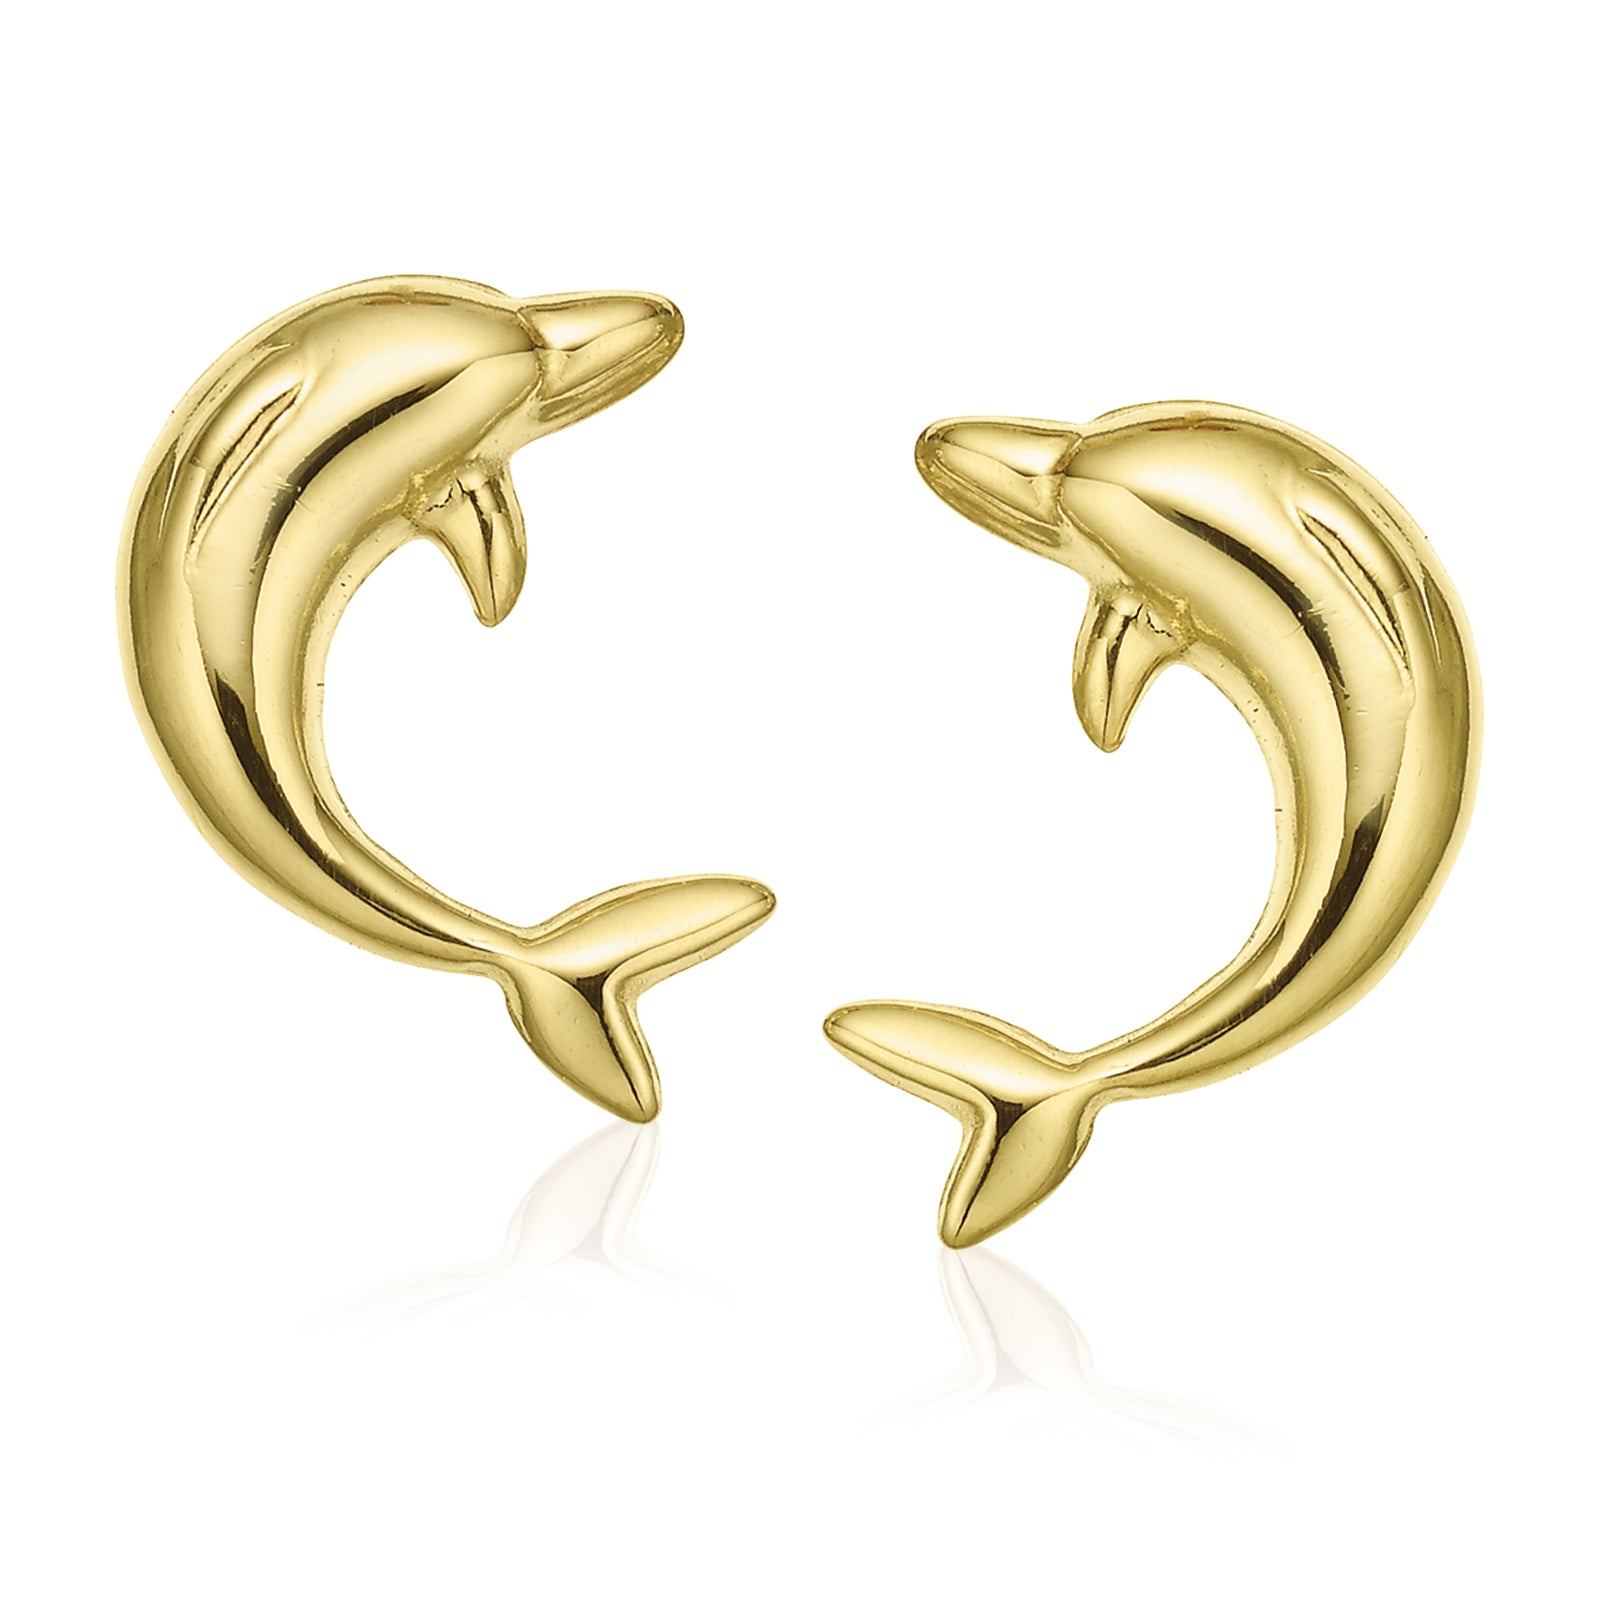 9ct Yellow Gold Flower Stud Earrings – Zamels